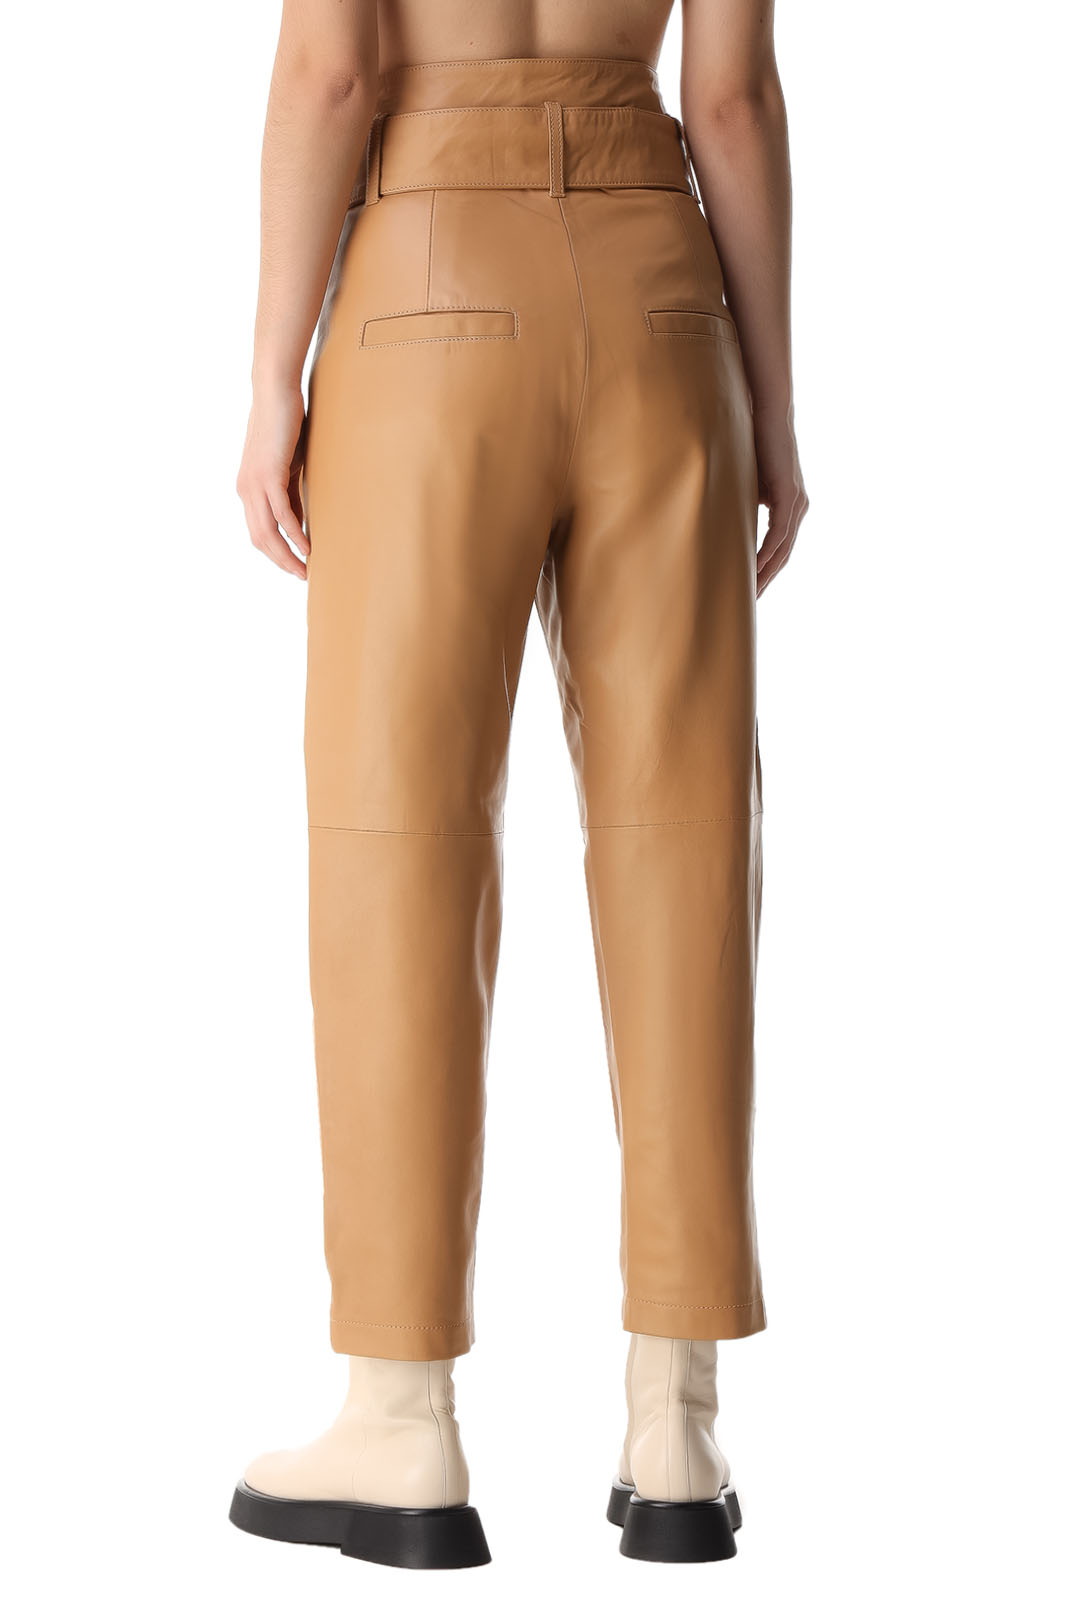 Укороченные кожаные брюки MARISSA WEBB MW21008